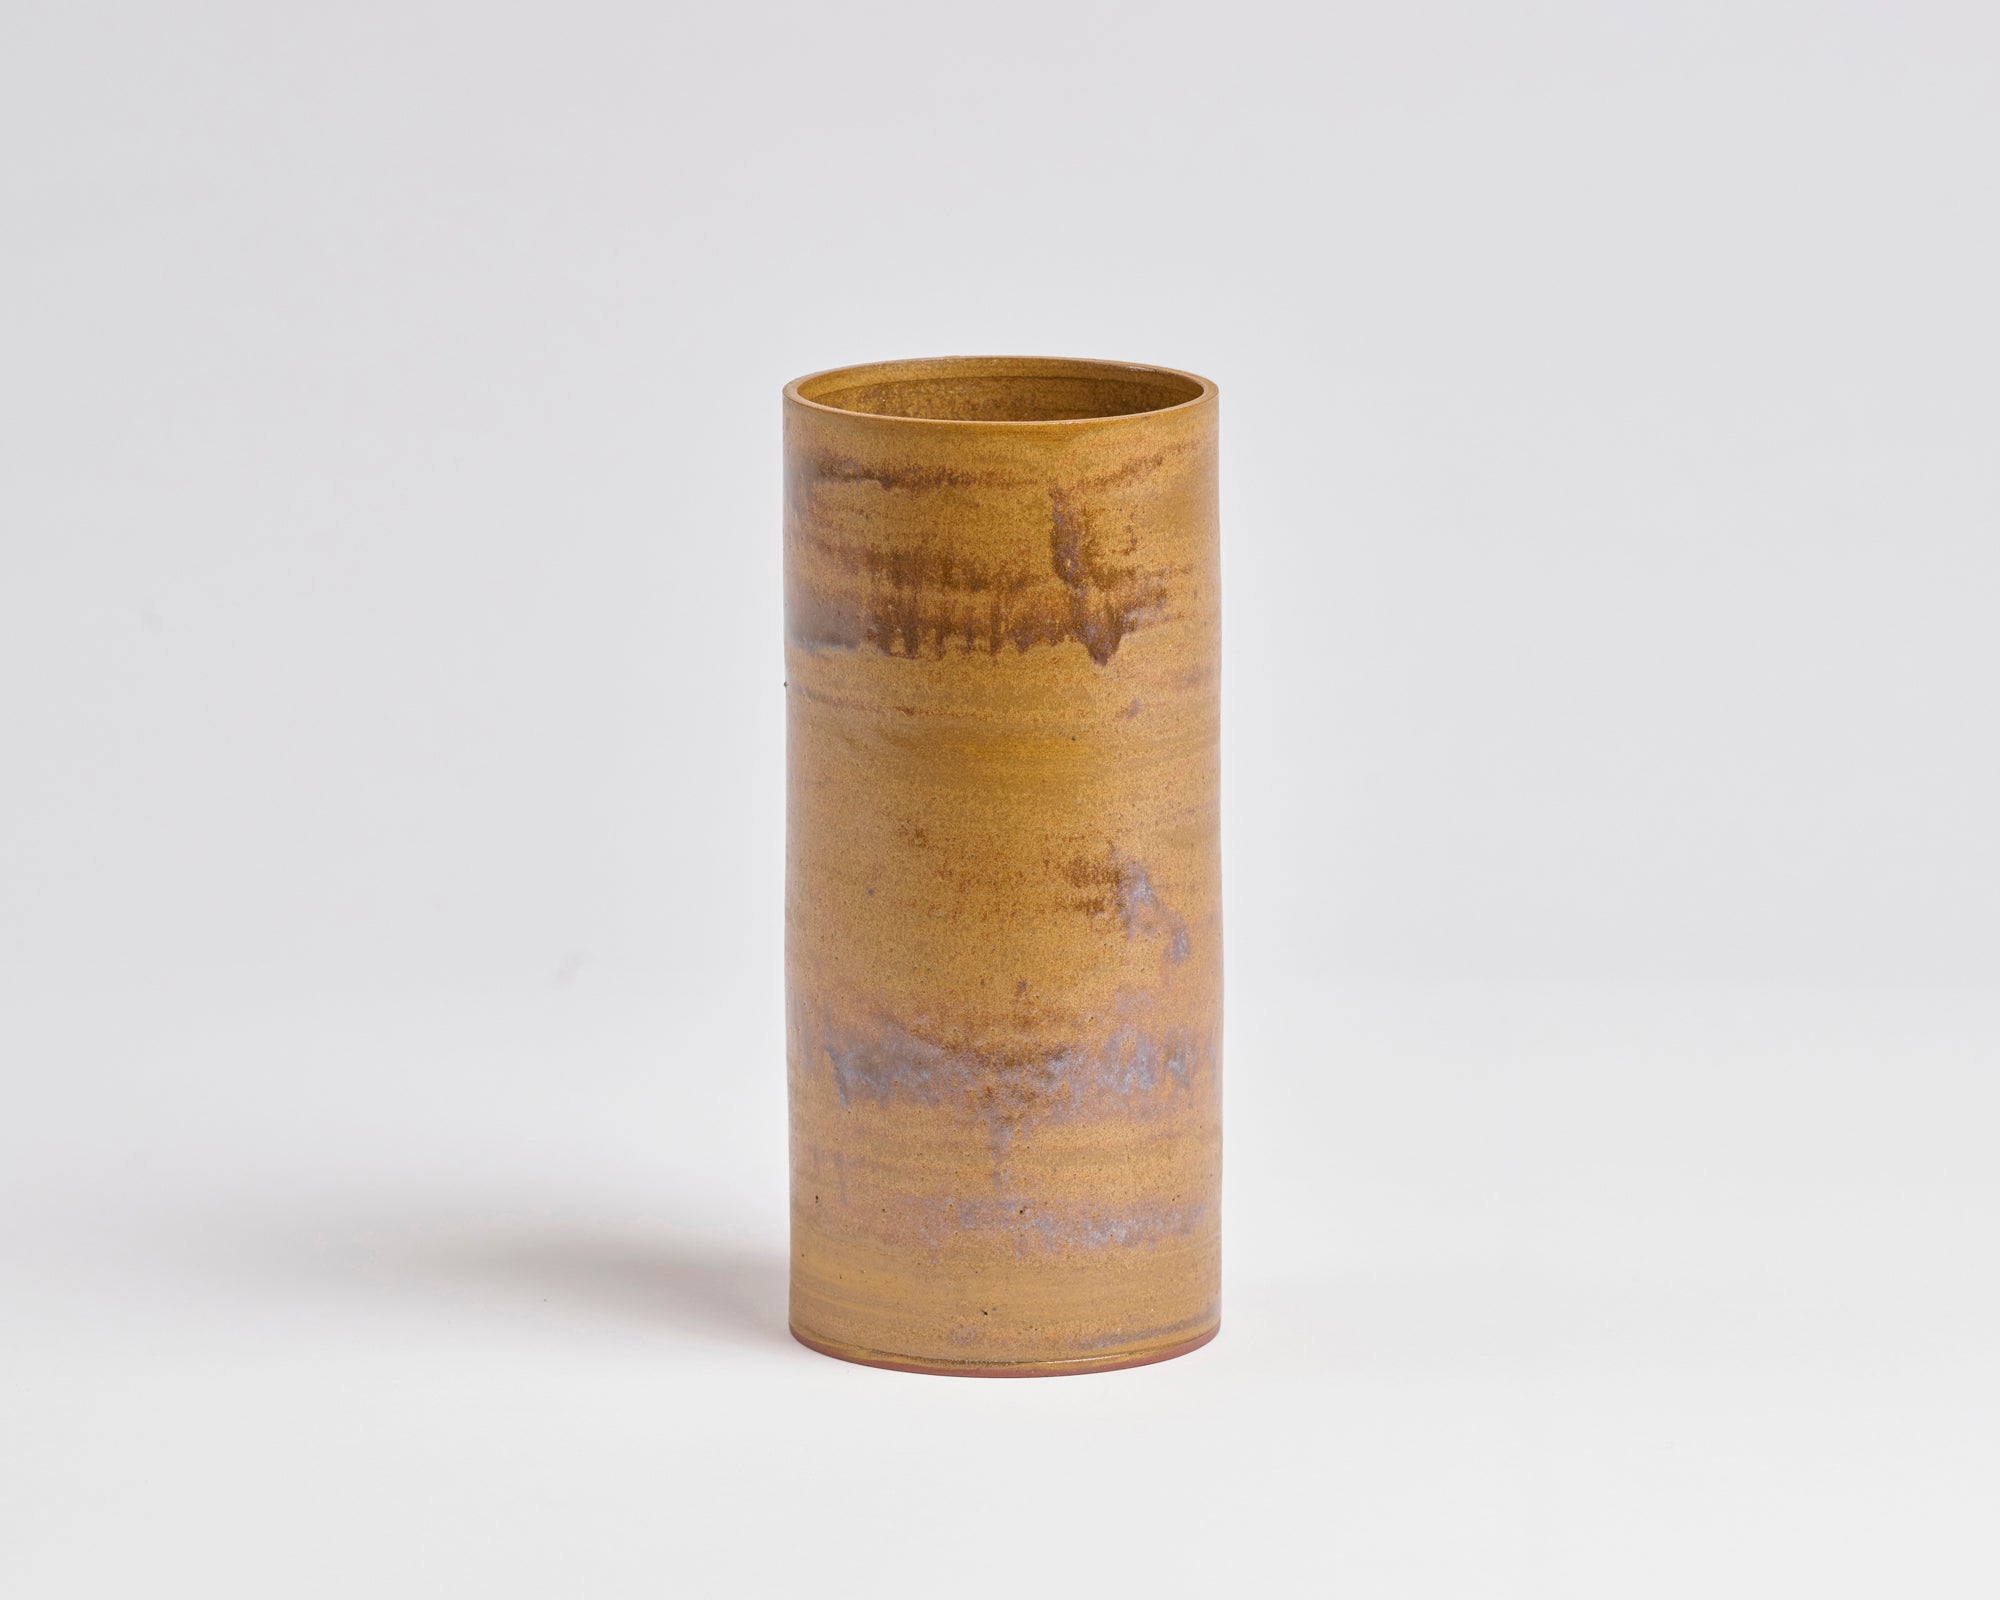 Szilvassy Ceramic Vessel 002 - Tan (Medium)